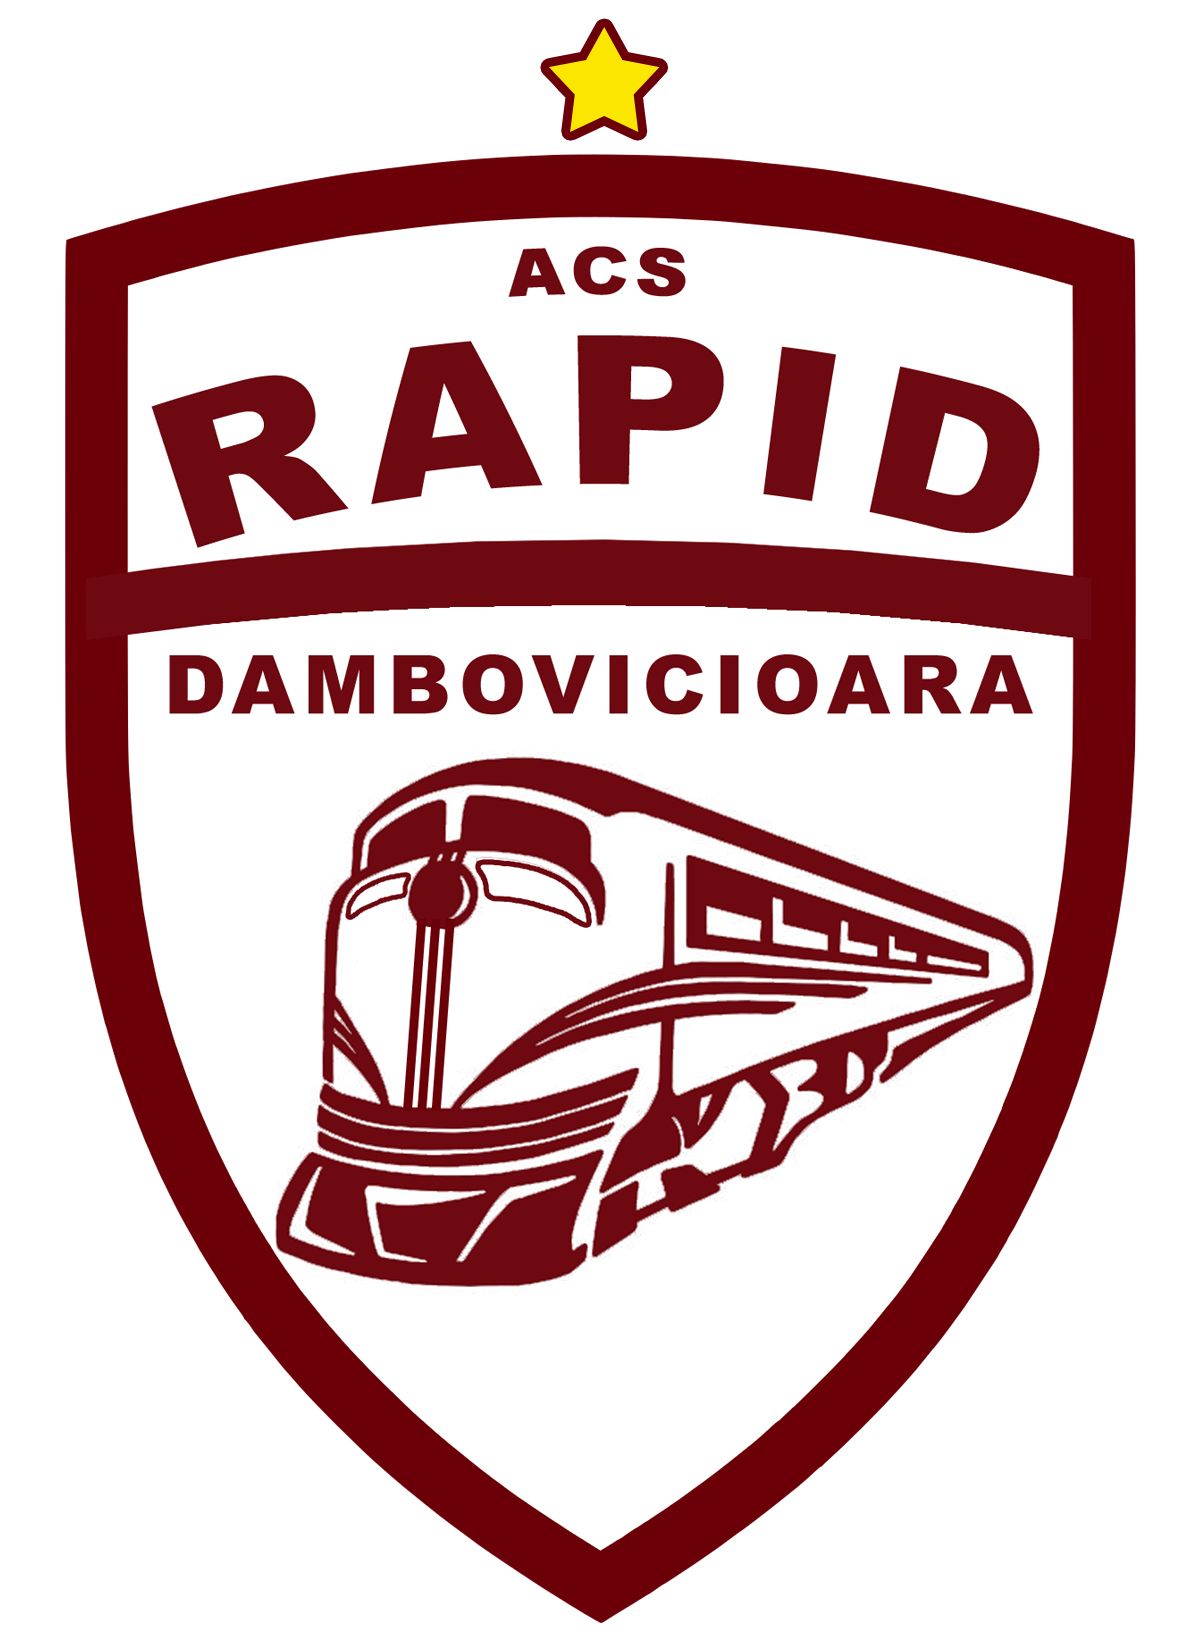 ACS Rapid Dambovicioara